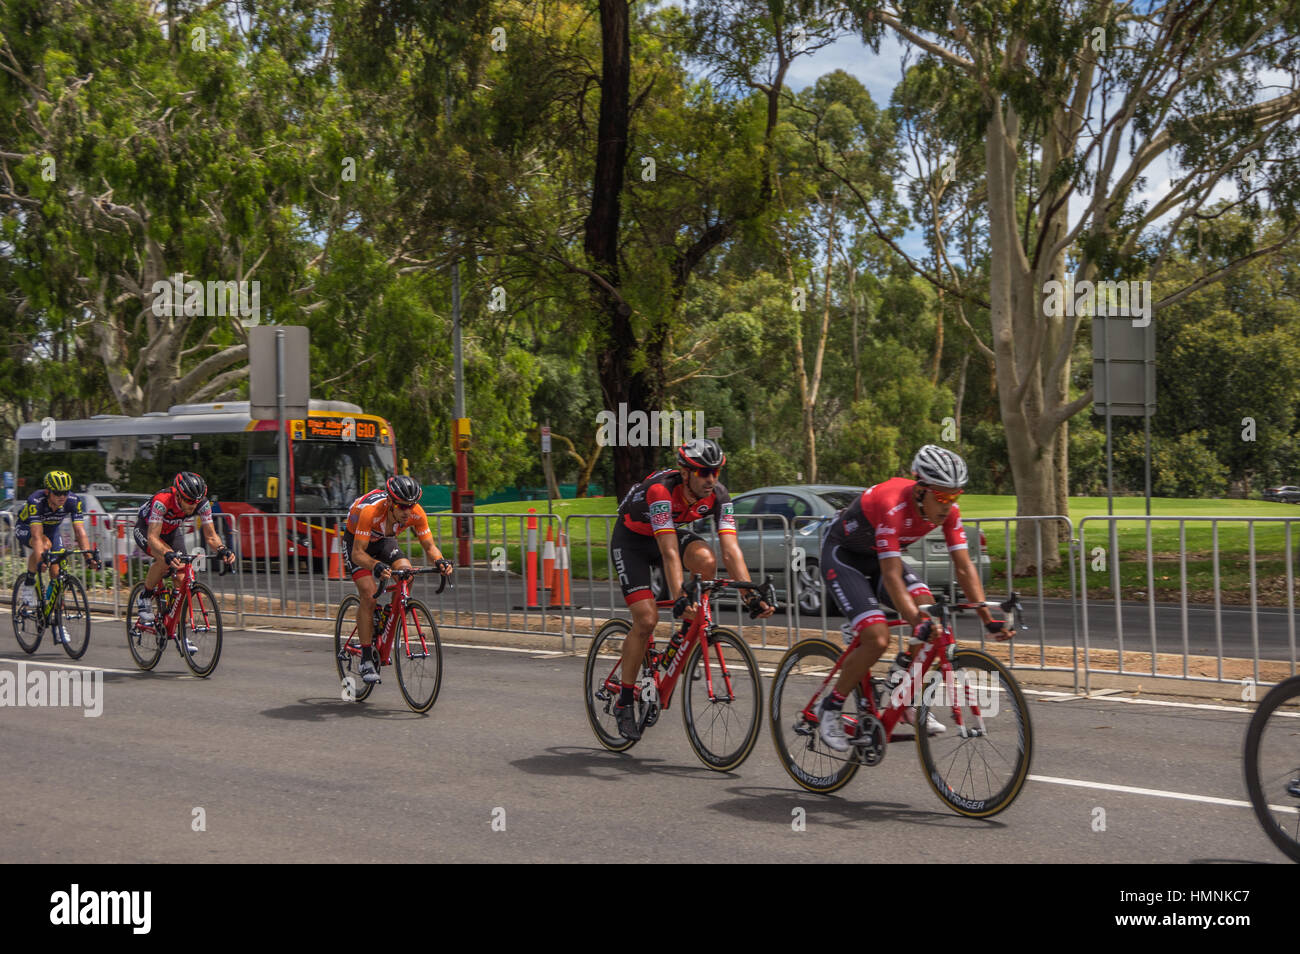 L'ultima tappa del Tour Down Under gare intorno al circuito di strada del centro di Adelaide su un bel giorno di estate Foto Stock